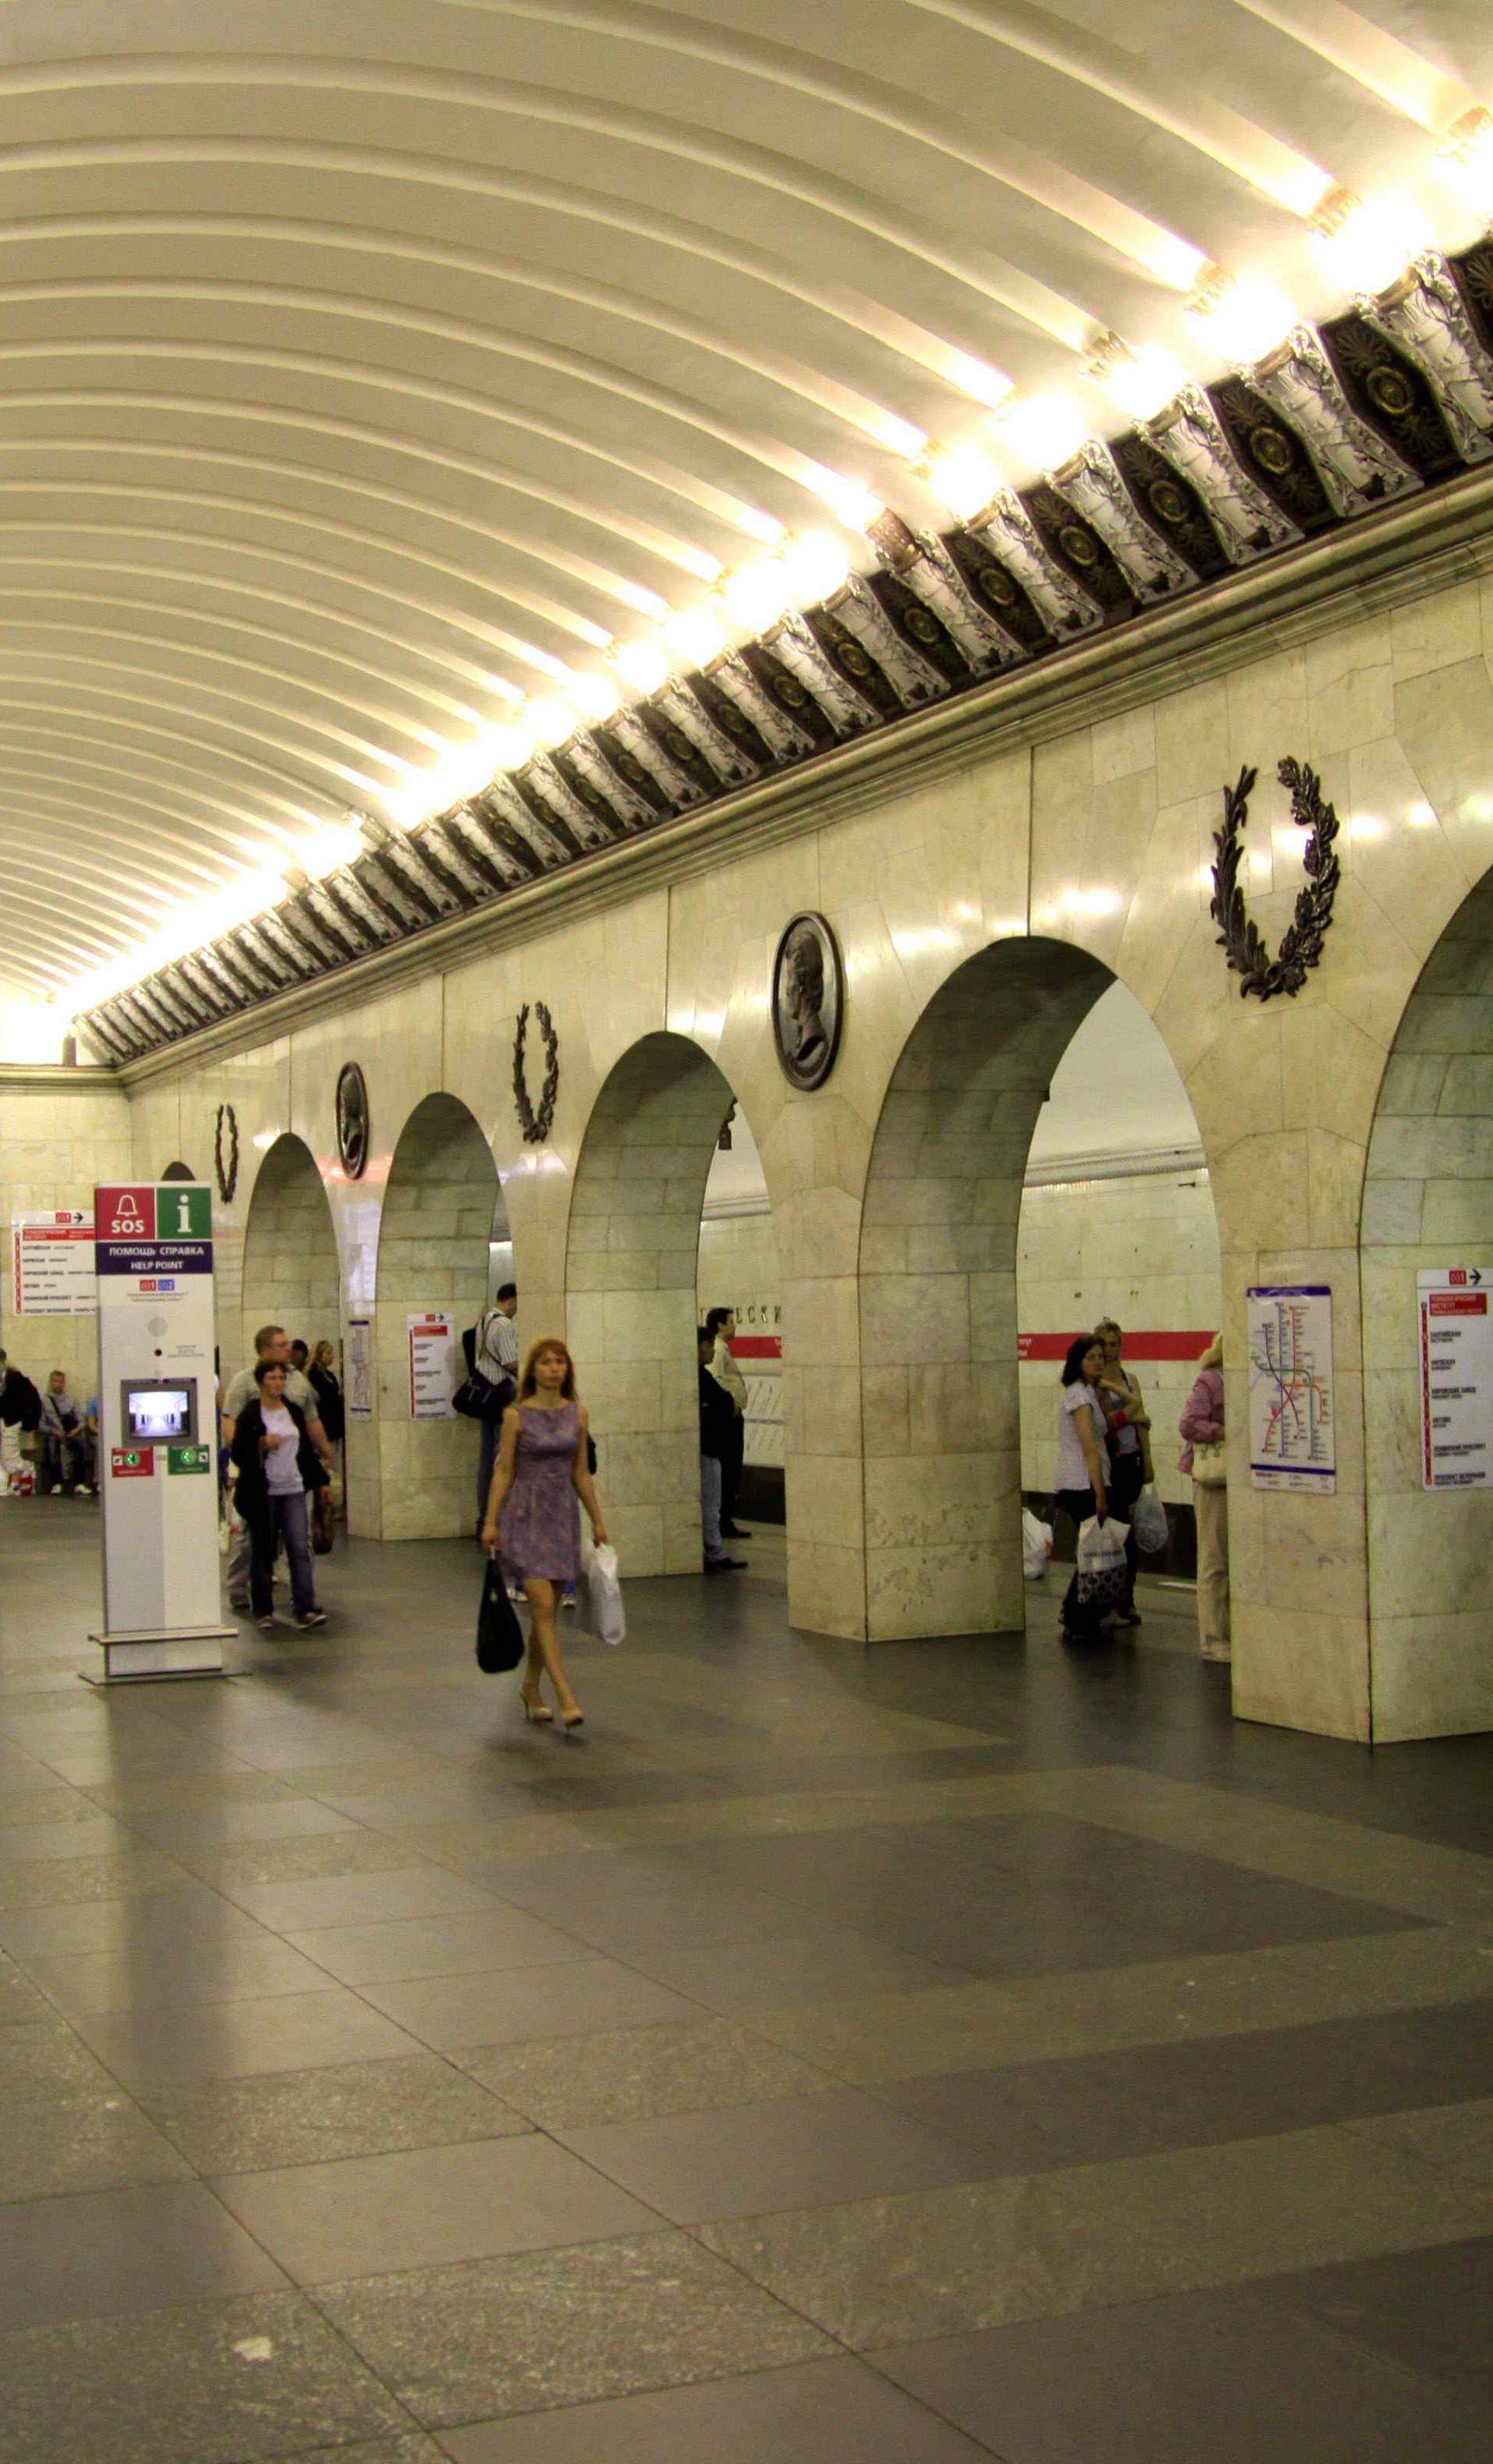 Interior view shows Tekhnologicheskiy institut metro station in St. Petersburg